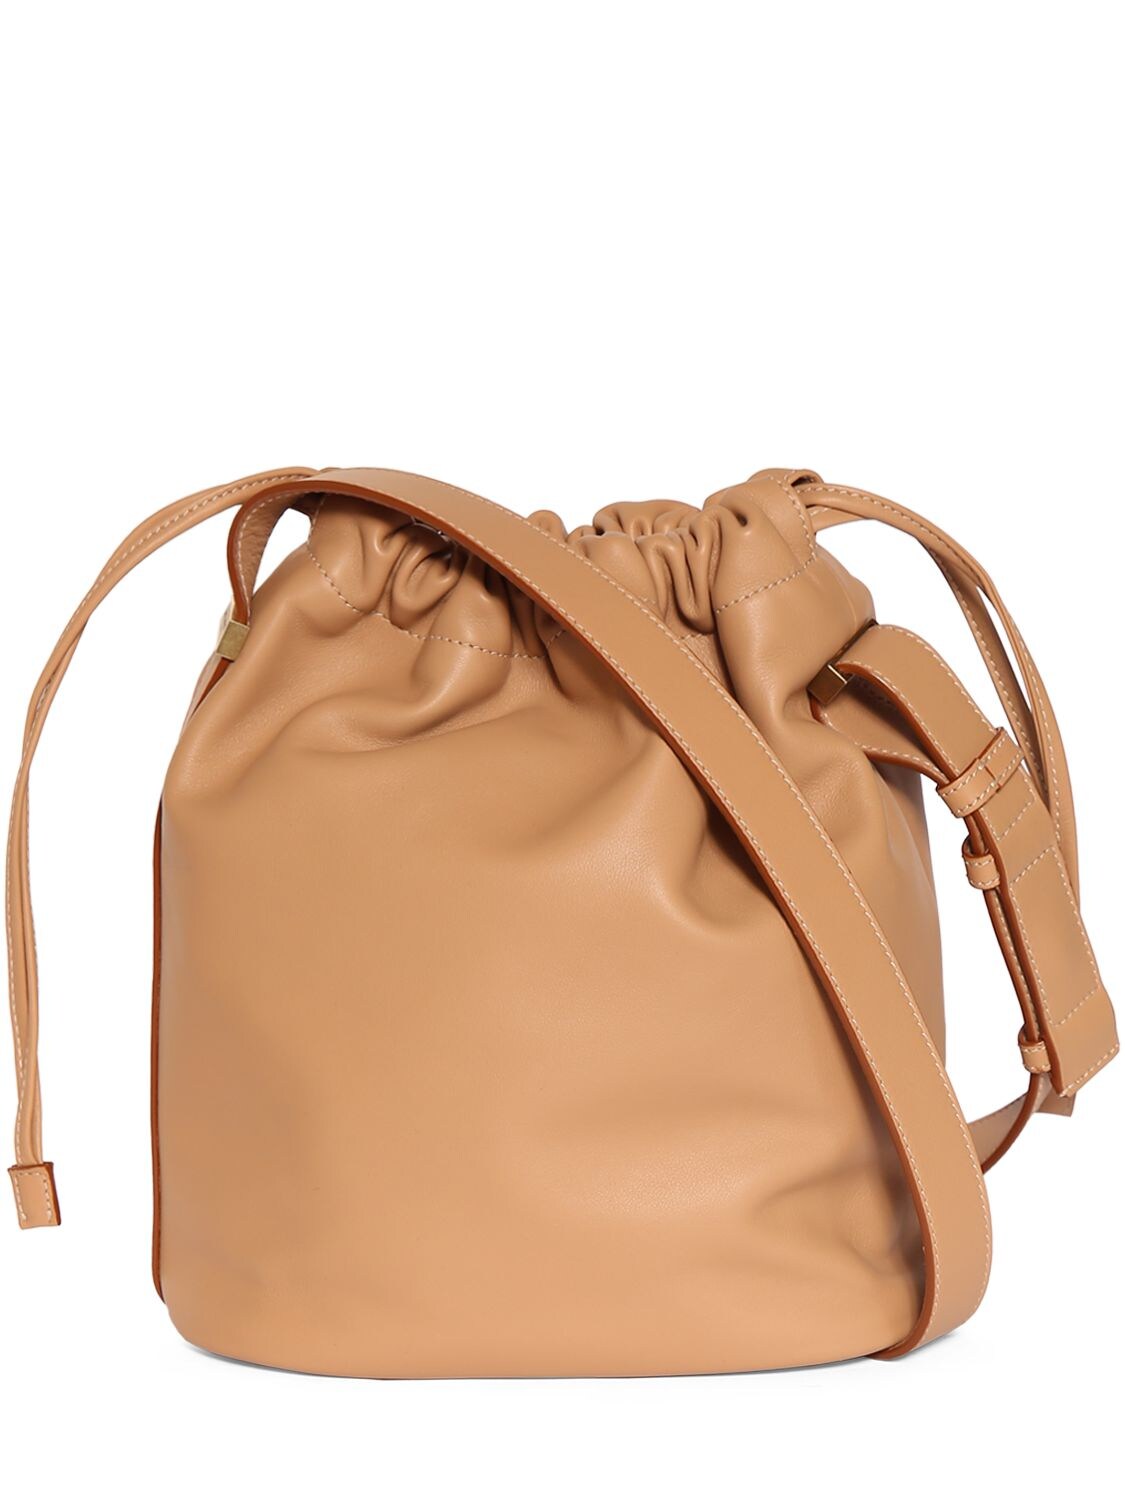 Rive gauche laced leather bucket bag - Saint Laurent - Men